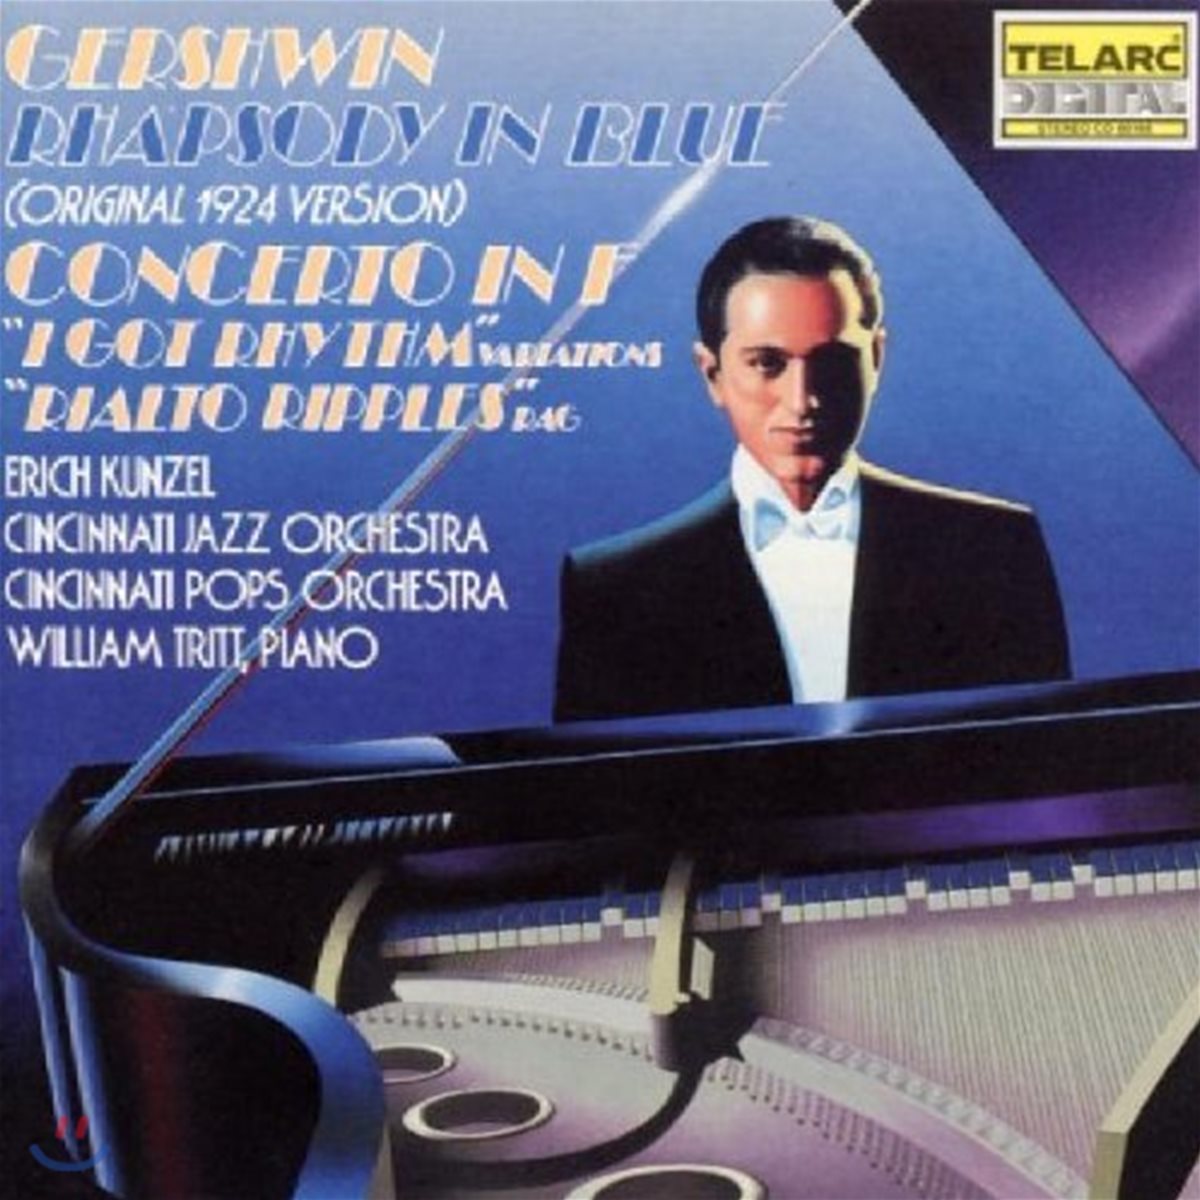 Erich Kunzel 거쉬윈: 랩소디 인 블루, 피아노 협주곡 F장조 - 에리히 쿤젤, 윌리엄 트리트, 신시내티 재즈 &amp; 팝스 오케스트라 (Gershwin: Rhapsody in Blue, Concerto in F)